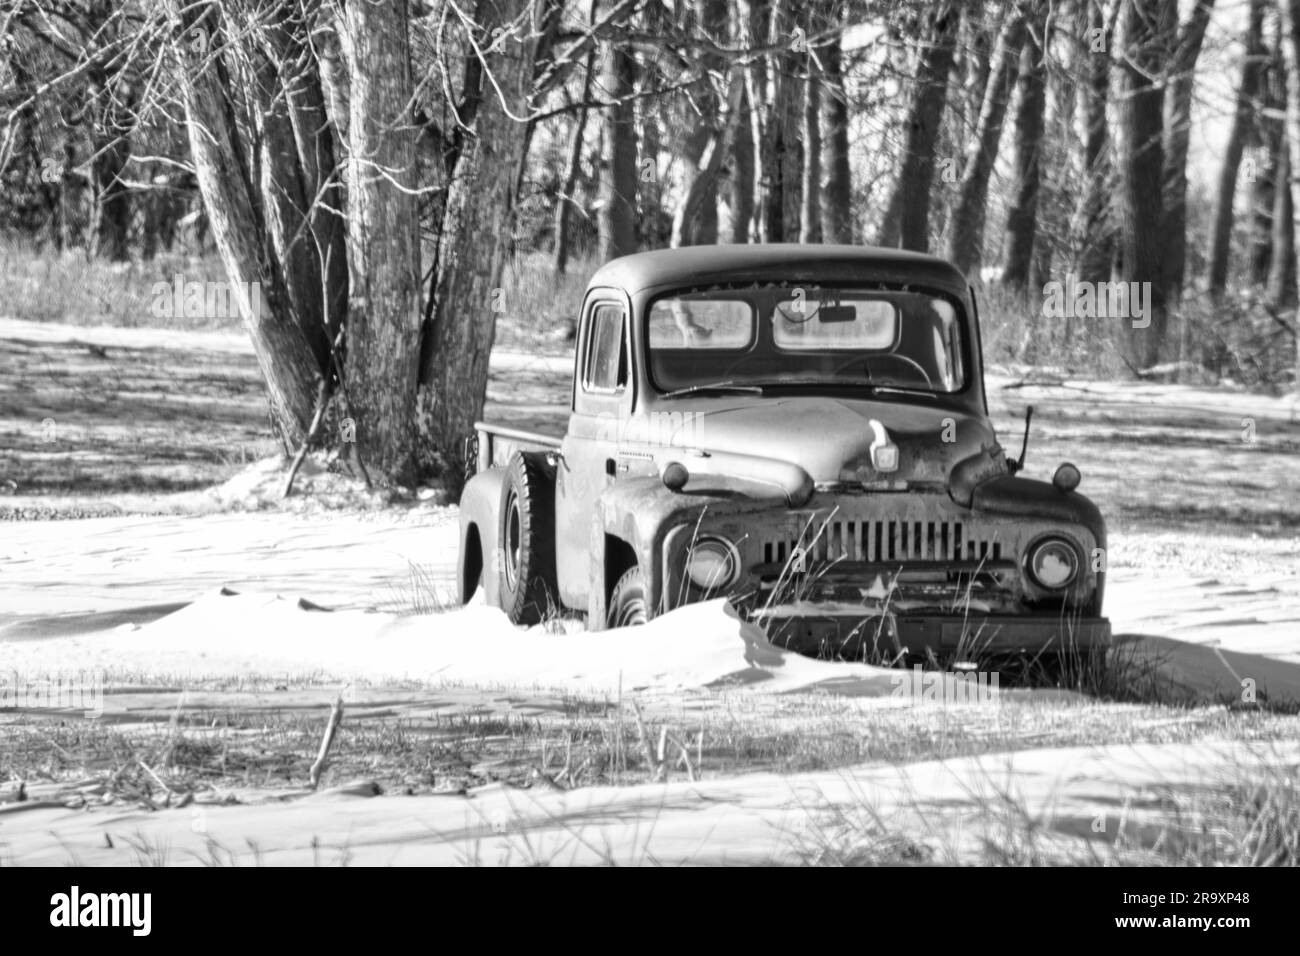 Una camioneta vieja sentada junto a un árbol en la nieve Foto de stock